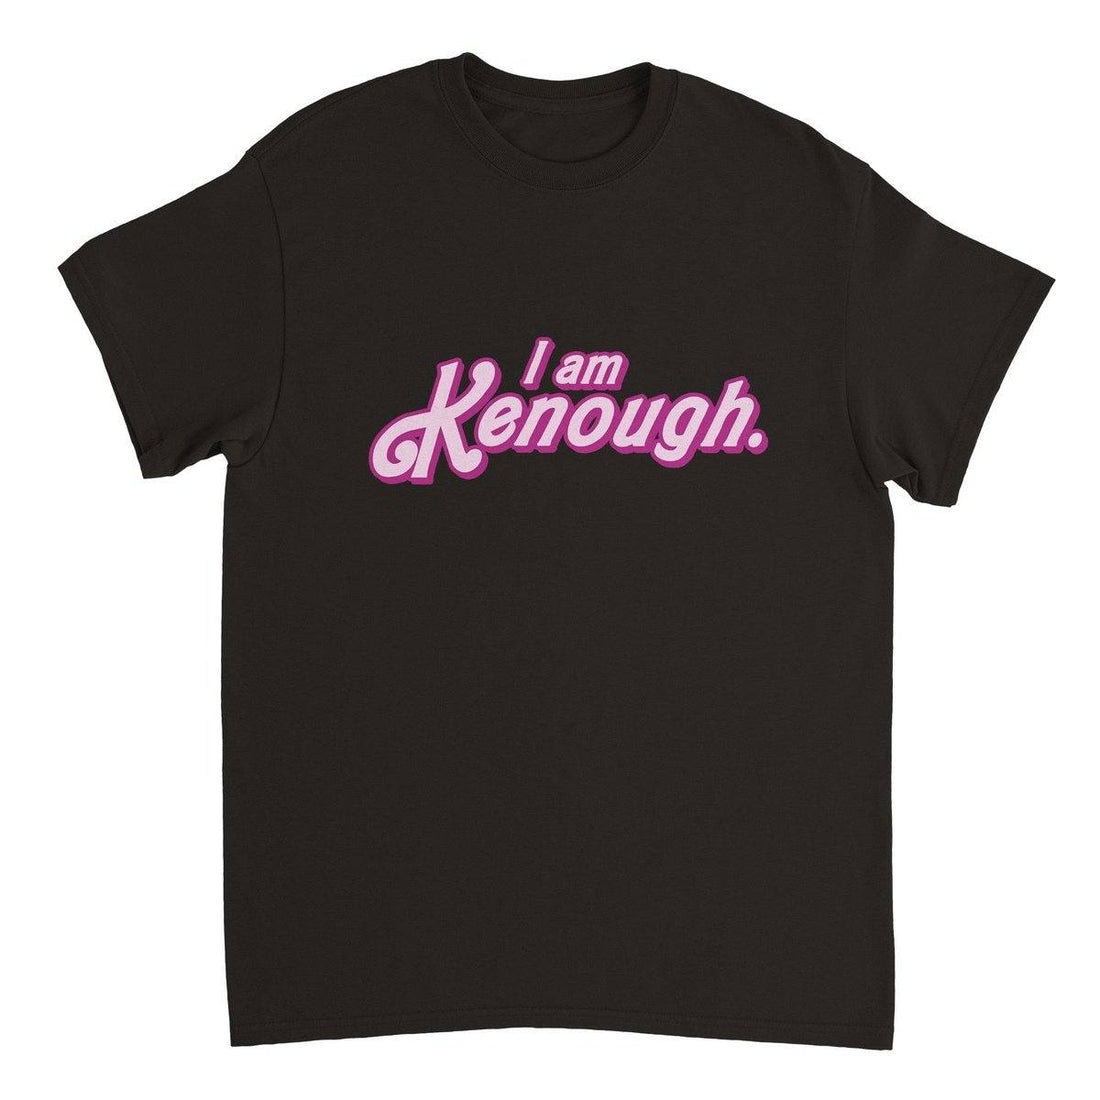 I Am Kenough T-Shirt Australia - BC Australia